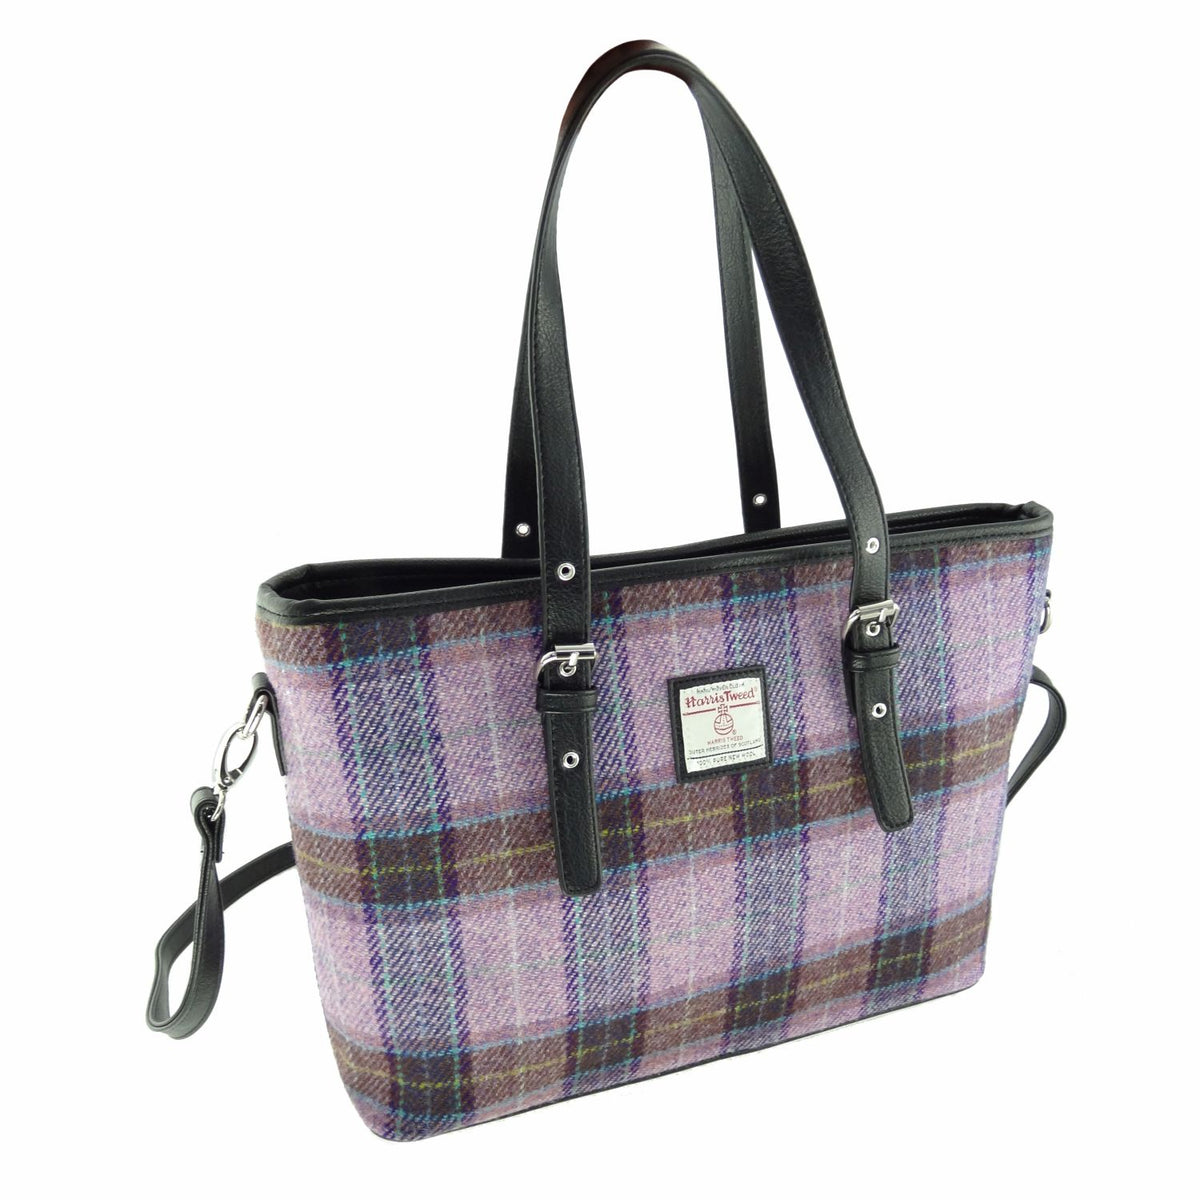 Harris Tweed Spey Tote Handbag with Shoulder Strap - 17 Tweeds Availab ...